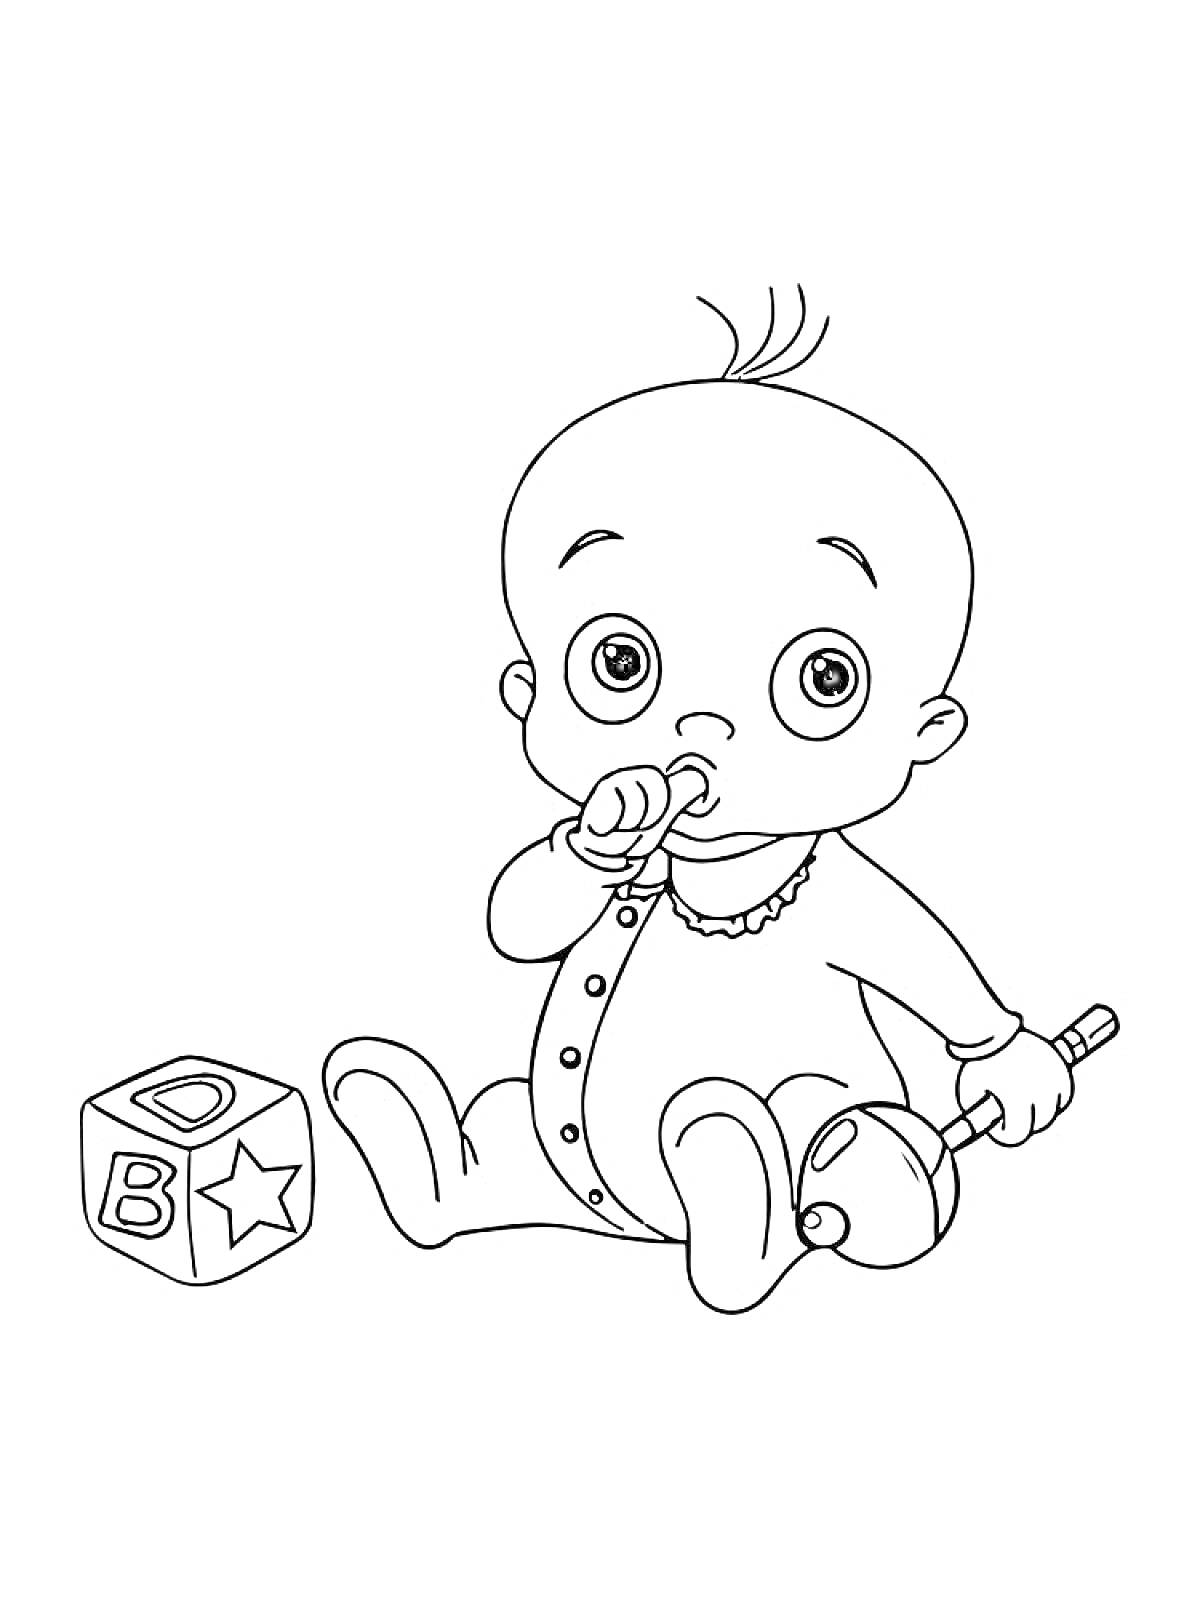 Младенец с погремушкой и кубиком (буквы А, В и D нарисованы на сторонах кубика)